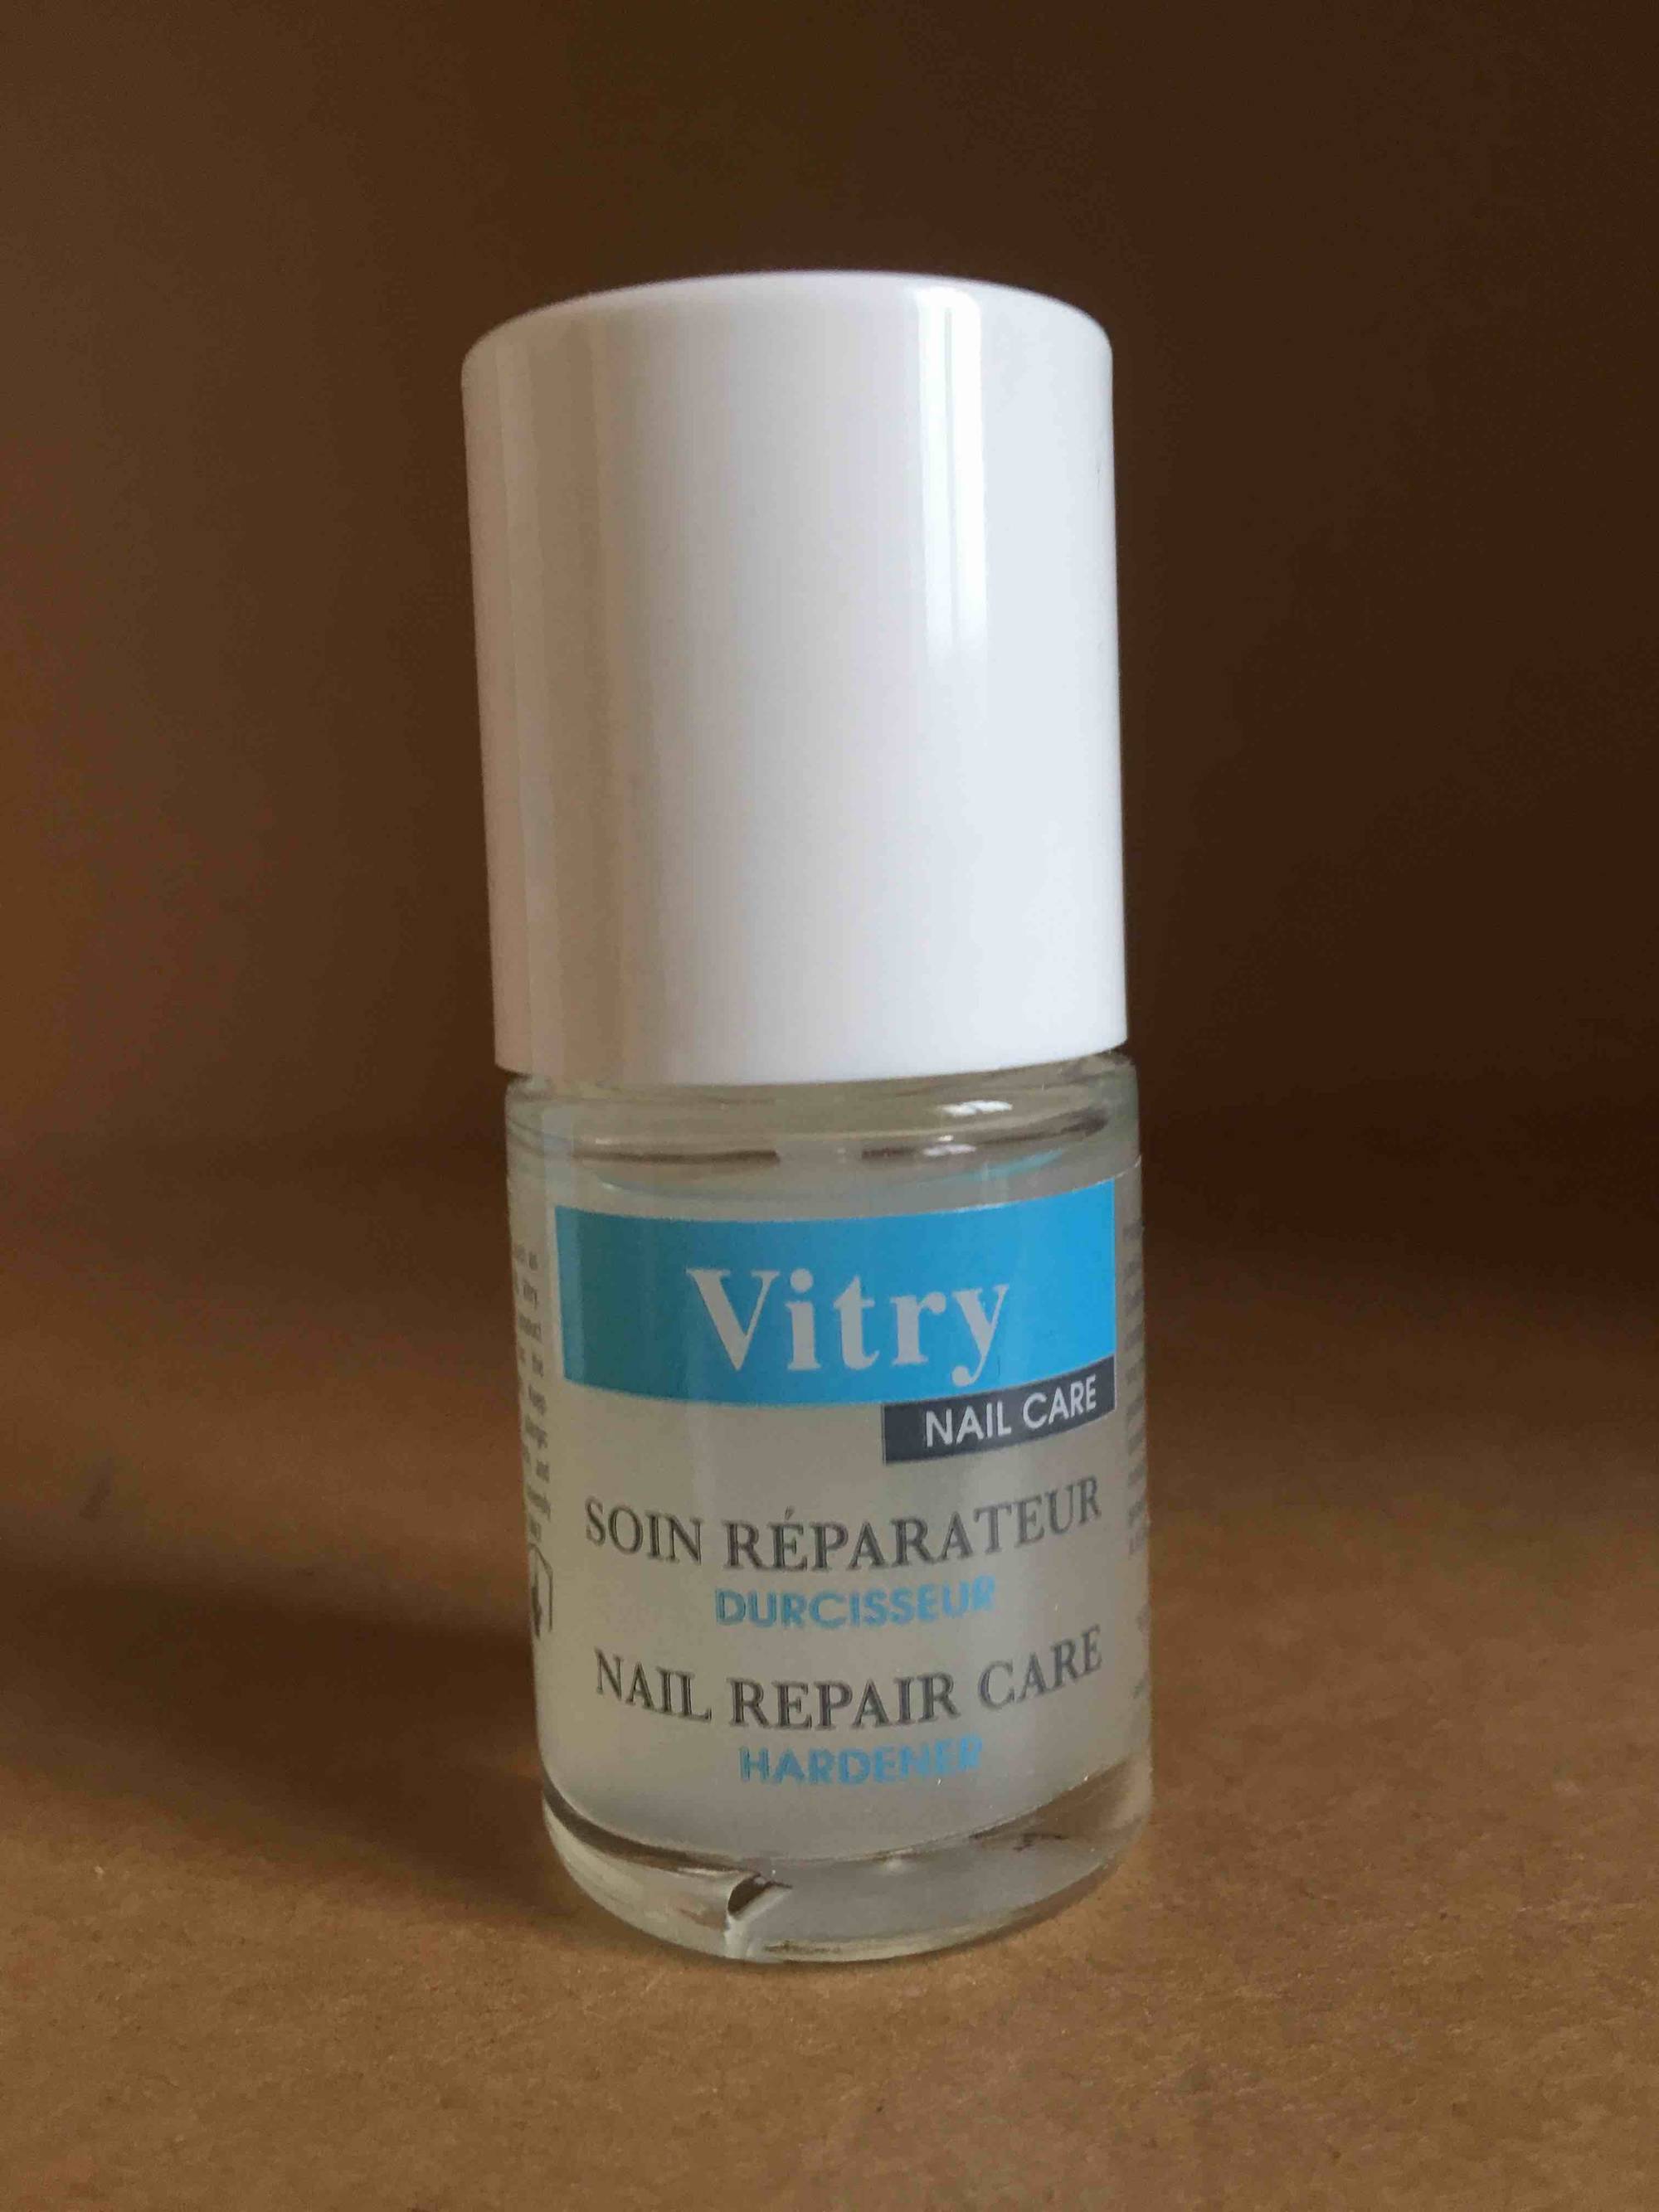 VITRY - Nail care - Soin réparateur durcisseur